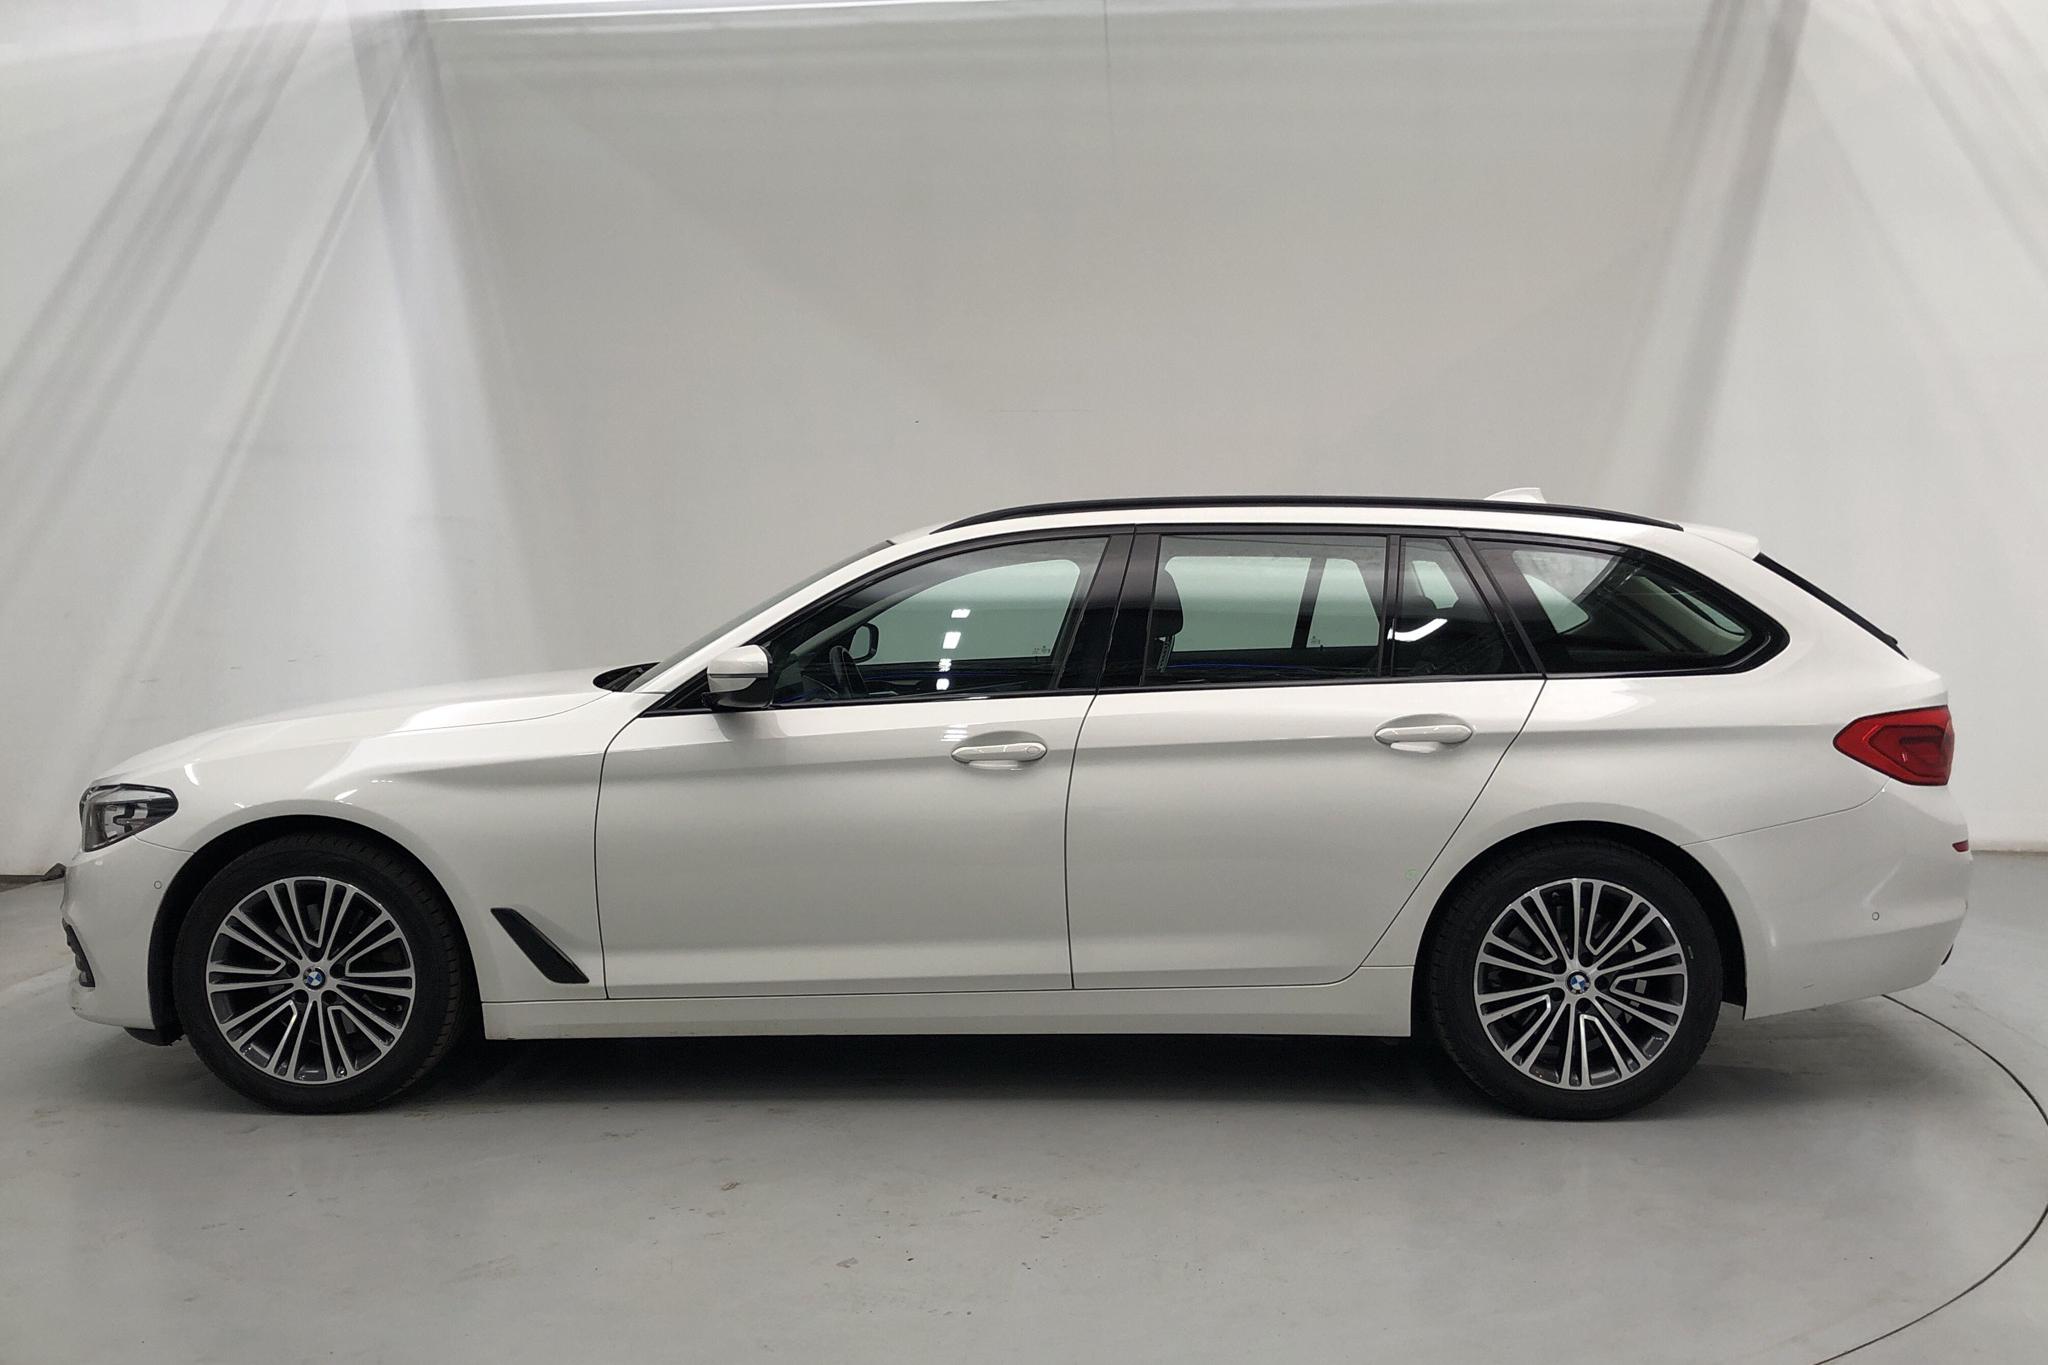 BMW 520d xDrive Touring, G31 (190hk) - 180 390 km - Automatic - white - 2020